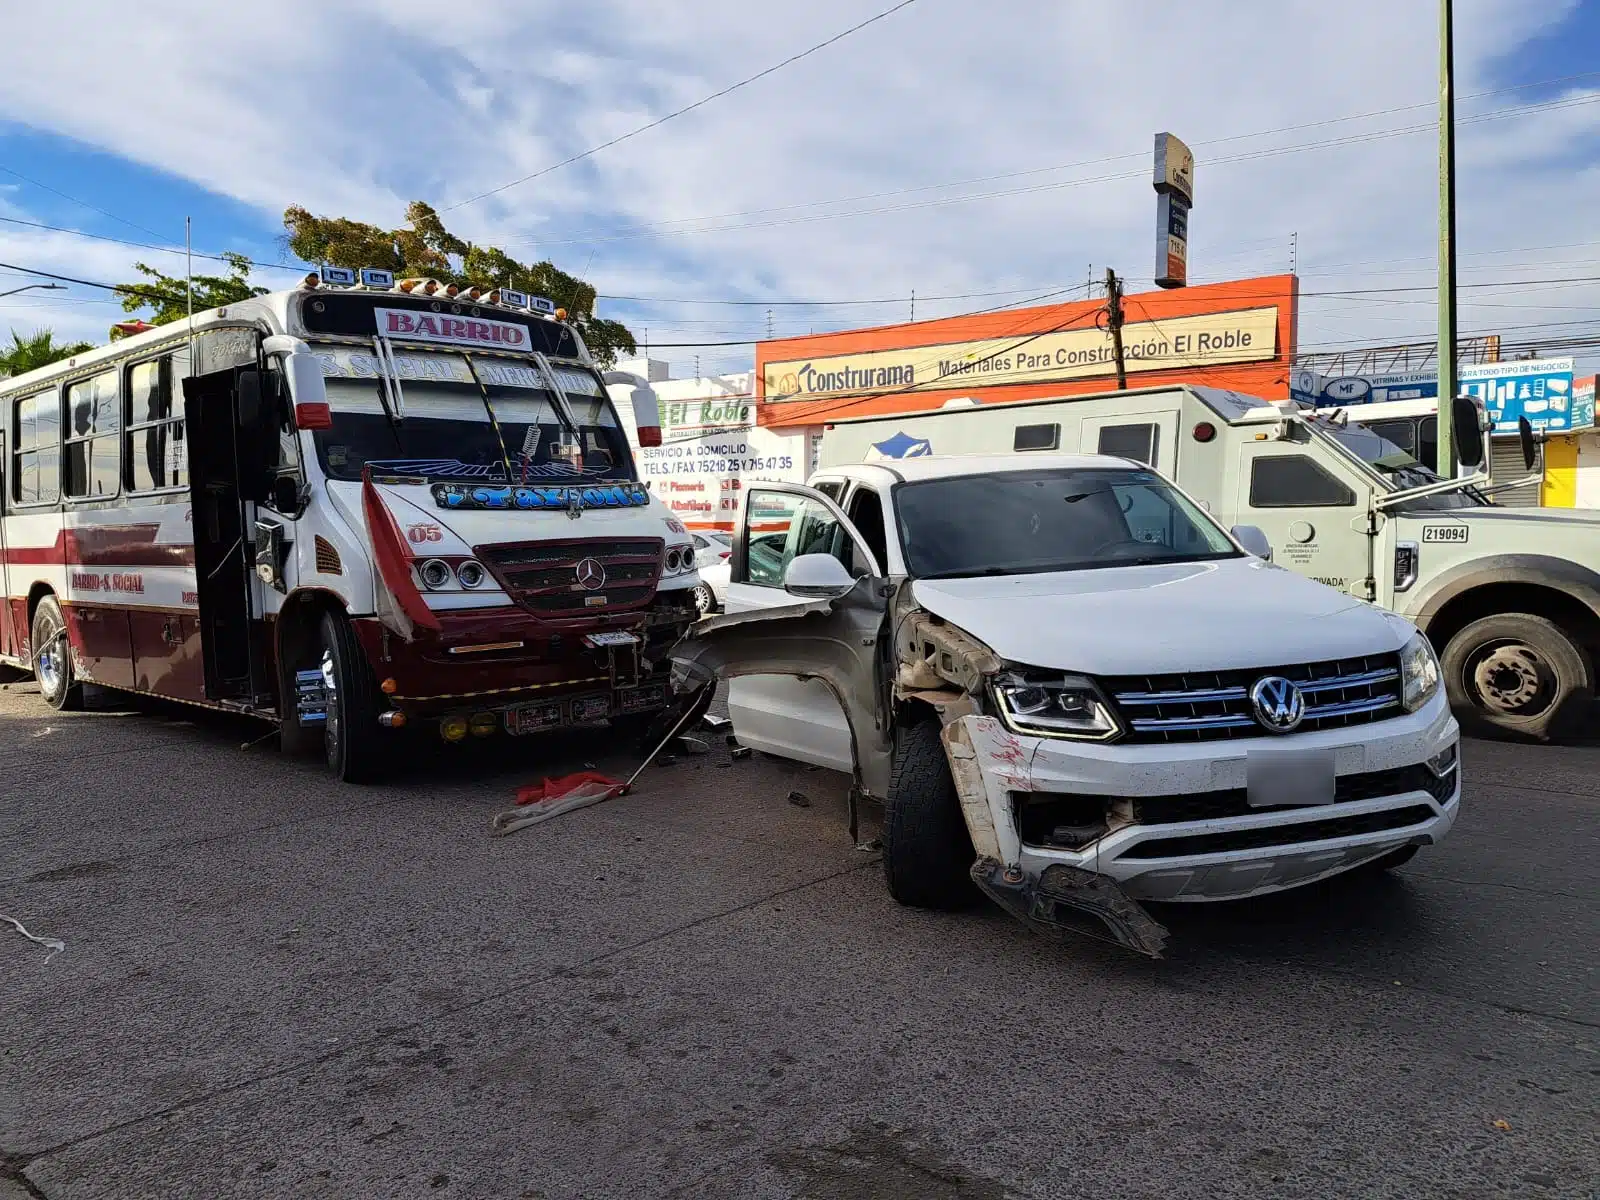 Camión de transporte urbano y una camioneta con daños en la carrocería tras haber chocado